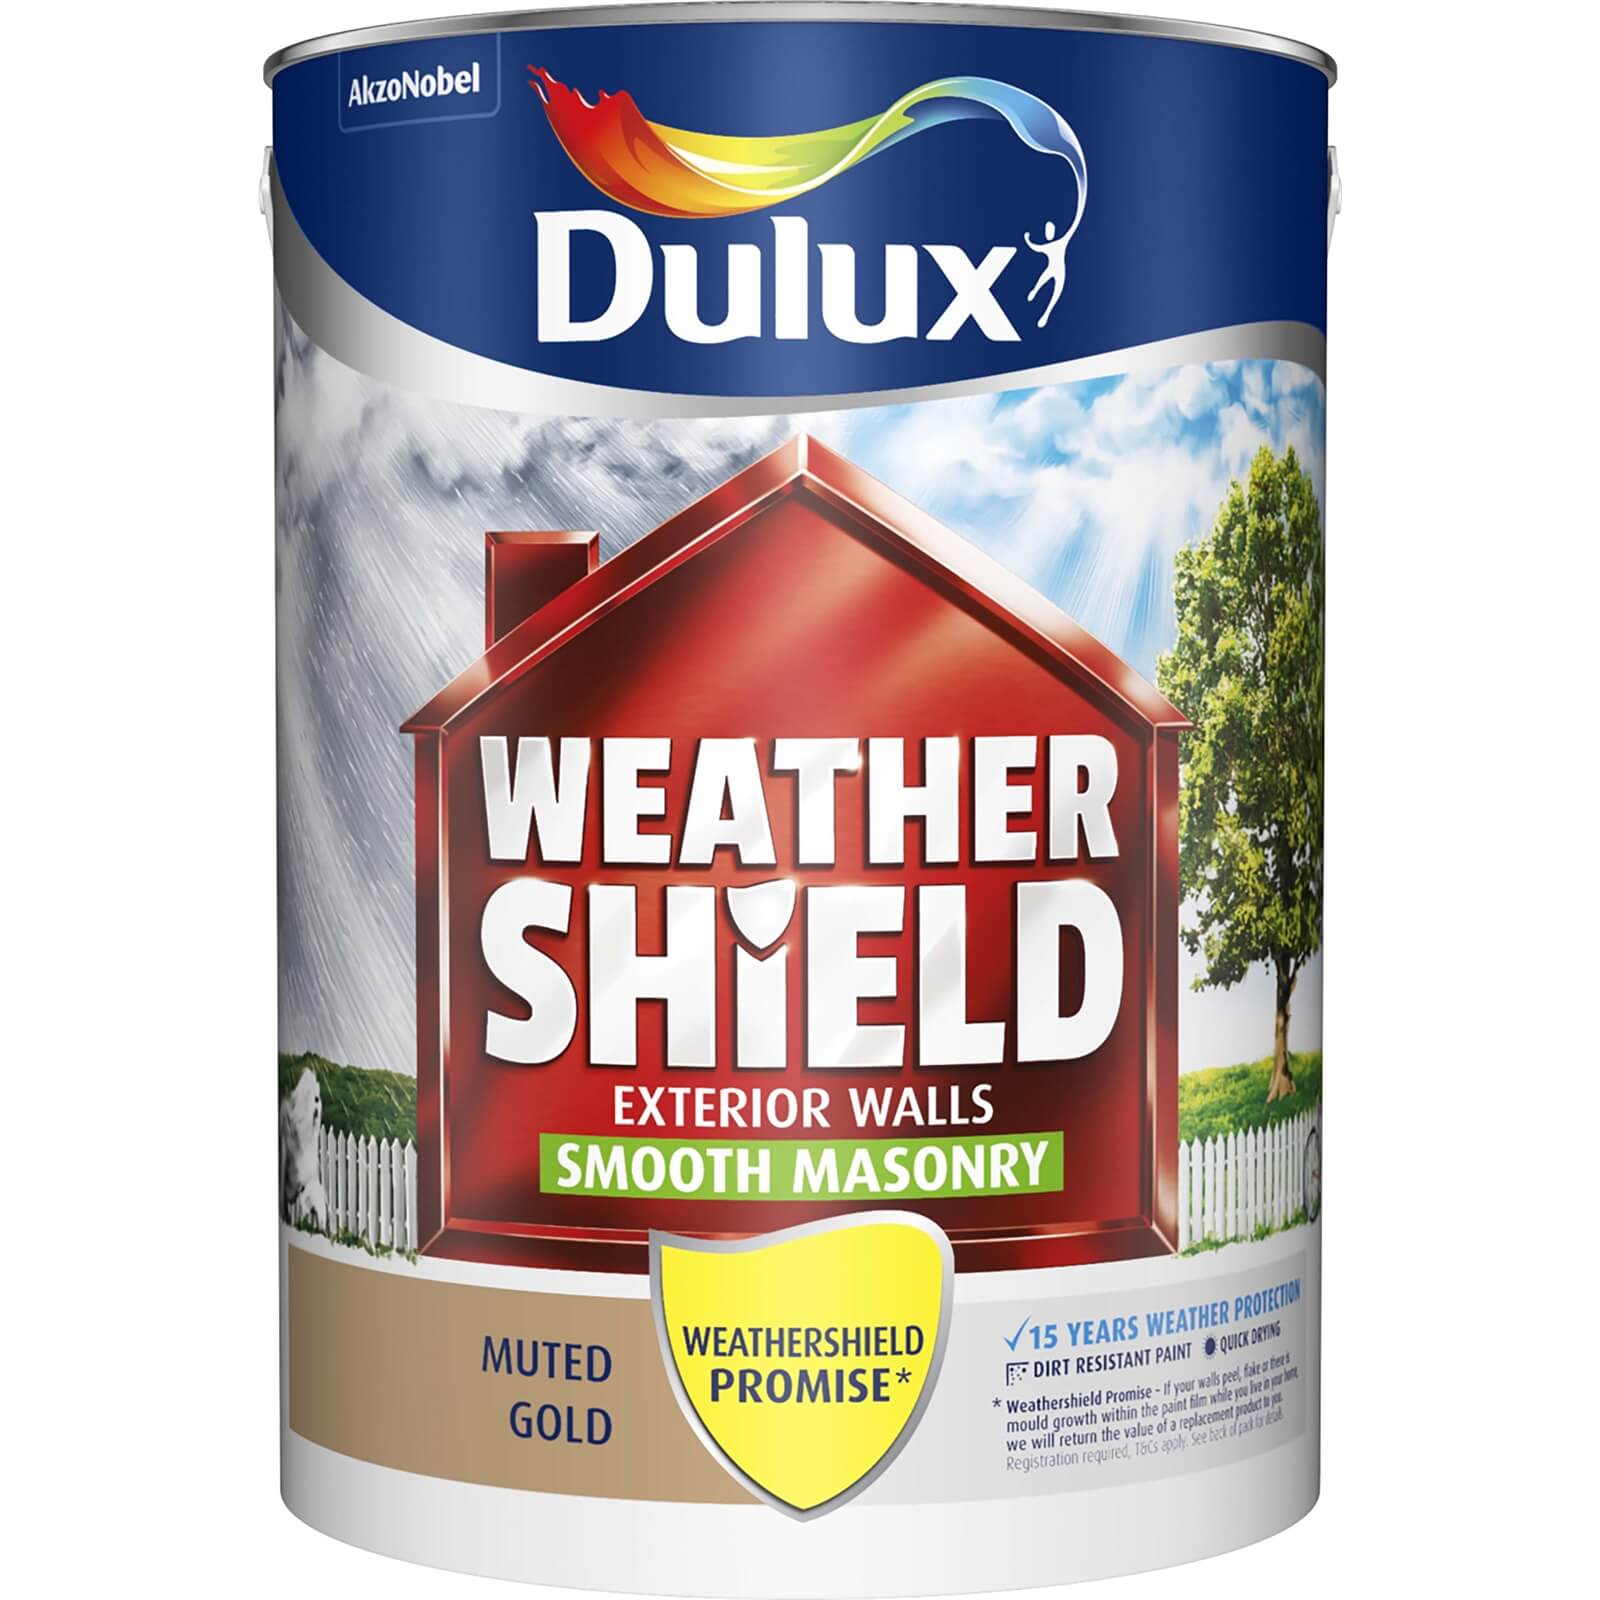 Dulux Weathershield Masonry Paint Muted Gold - 5L